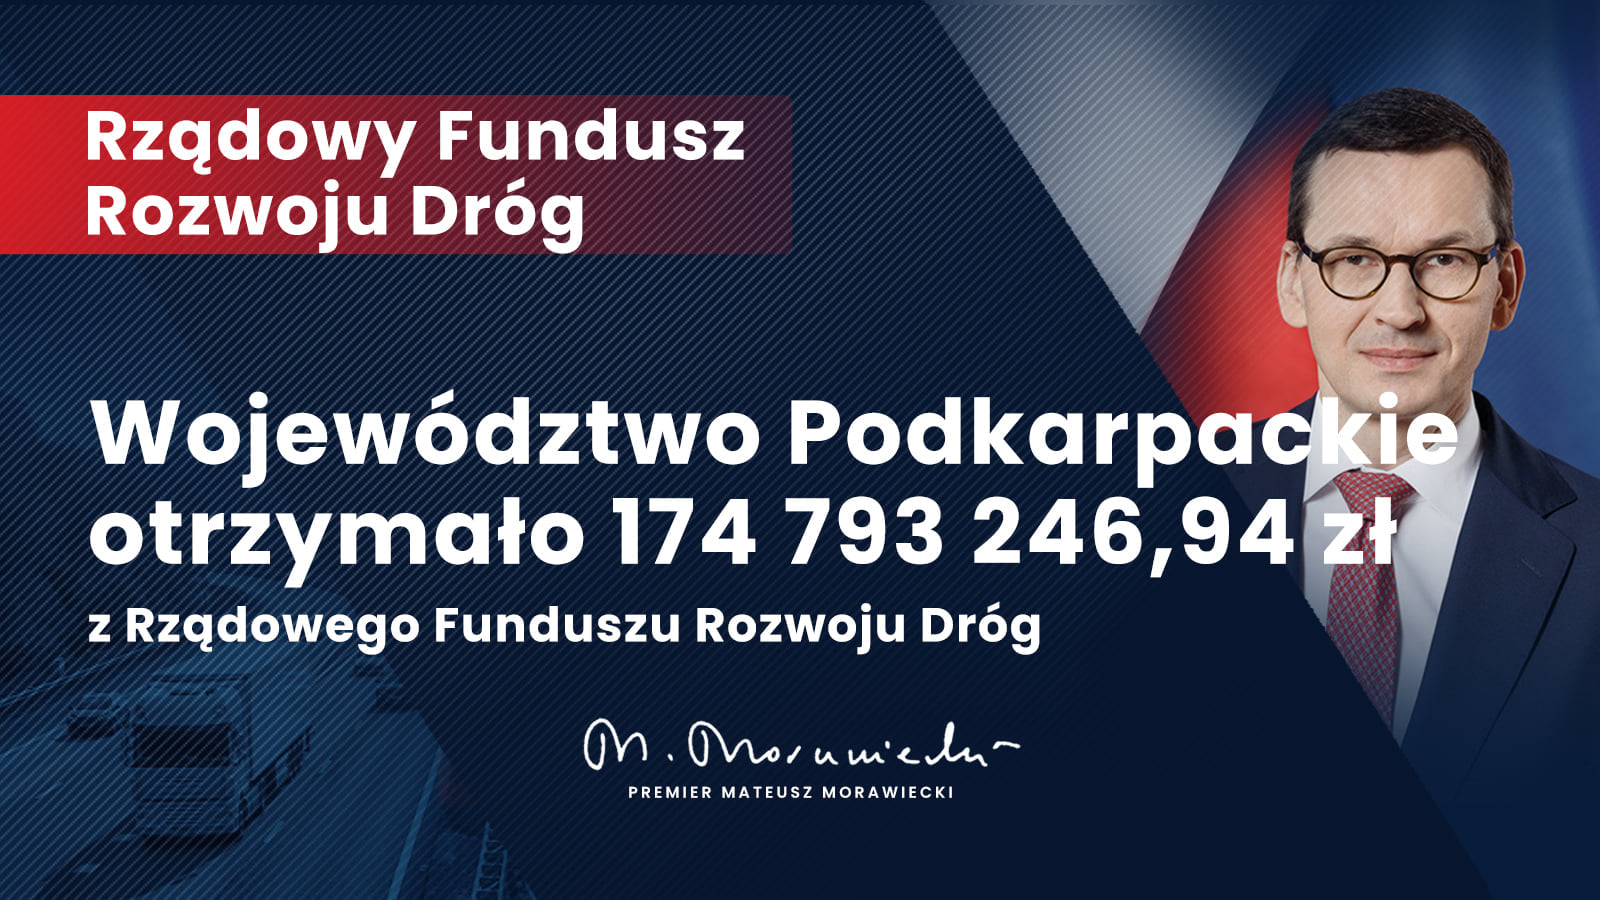 Województwo Podkarpackie otrzymało 174 793 246,94 zł w ramach Rządowego Funduszu Rozwoju Dróg